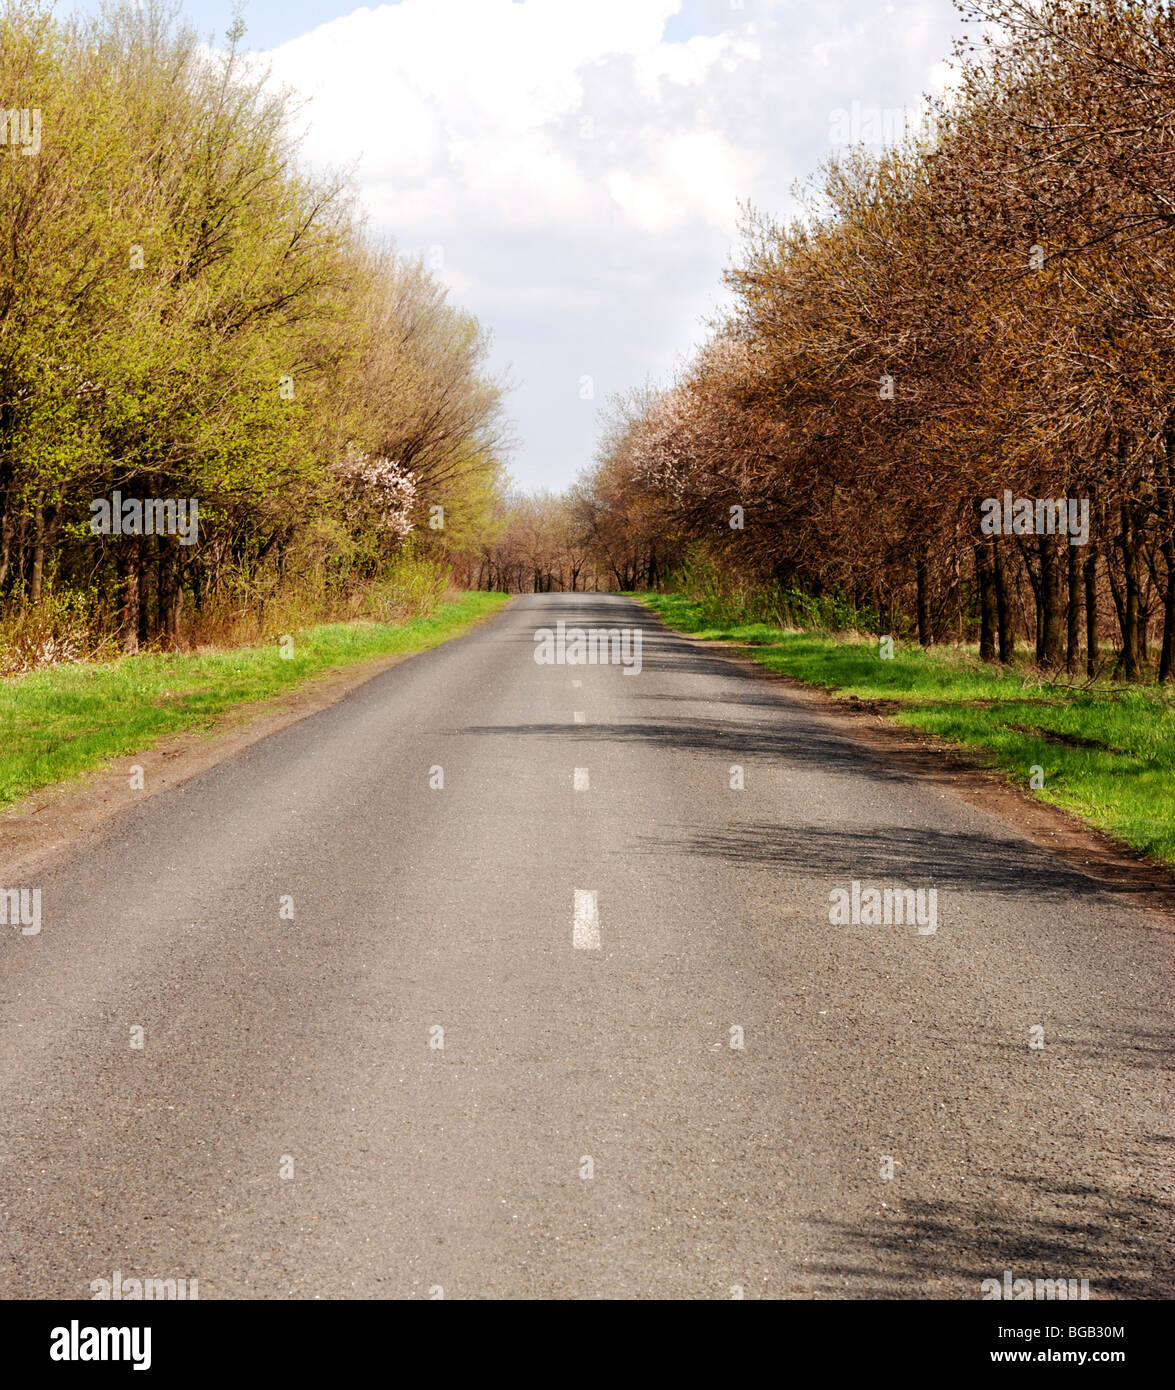 Autobahn mit Dichter Vegetation an einem Straßenrand Stockfoto